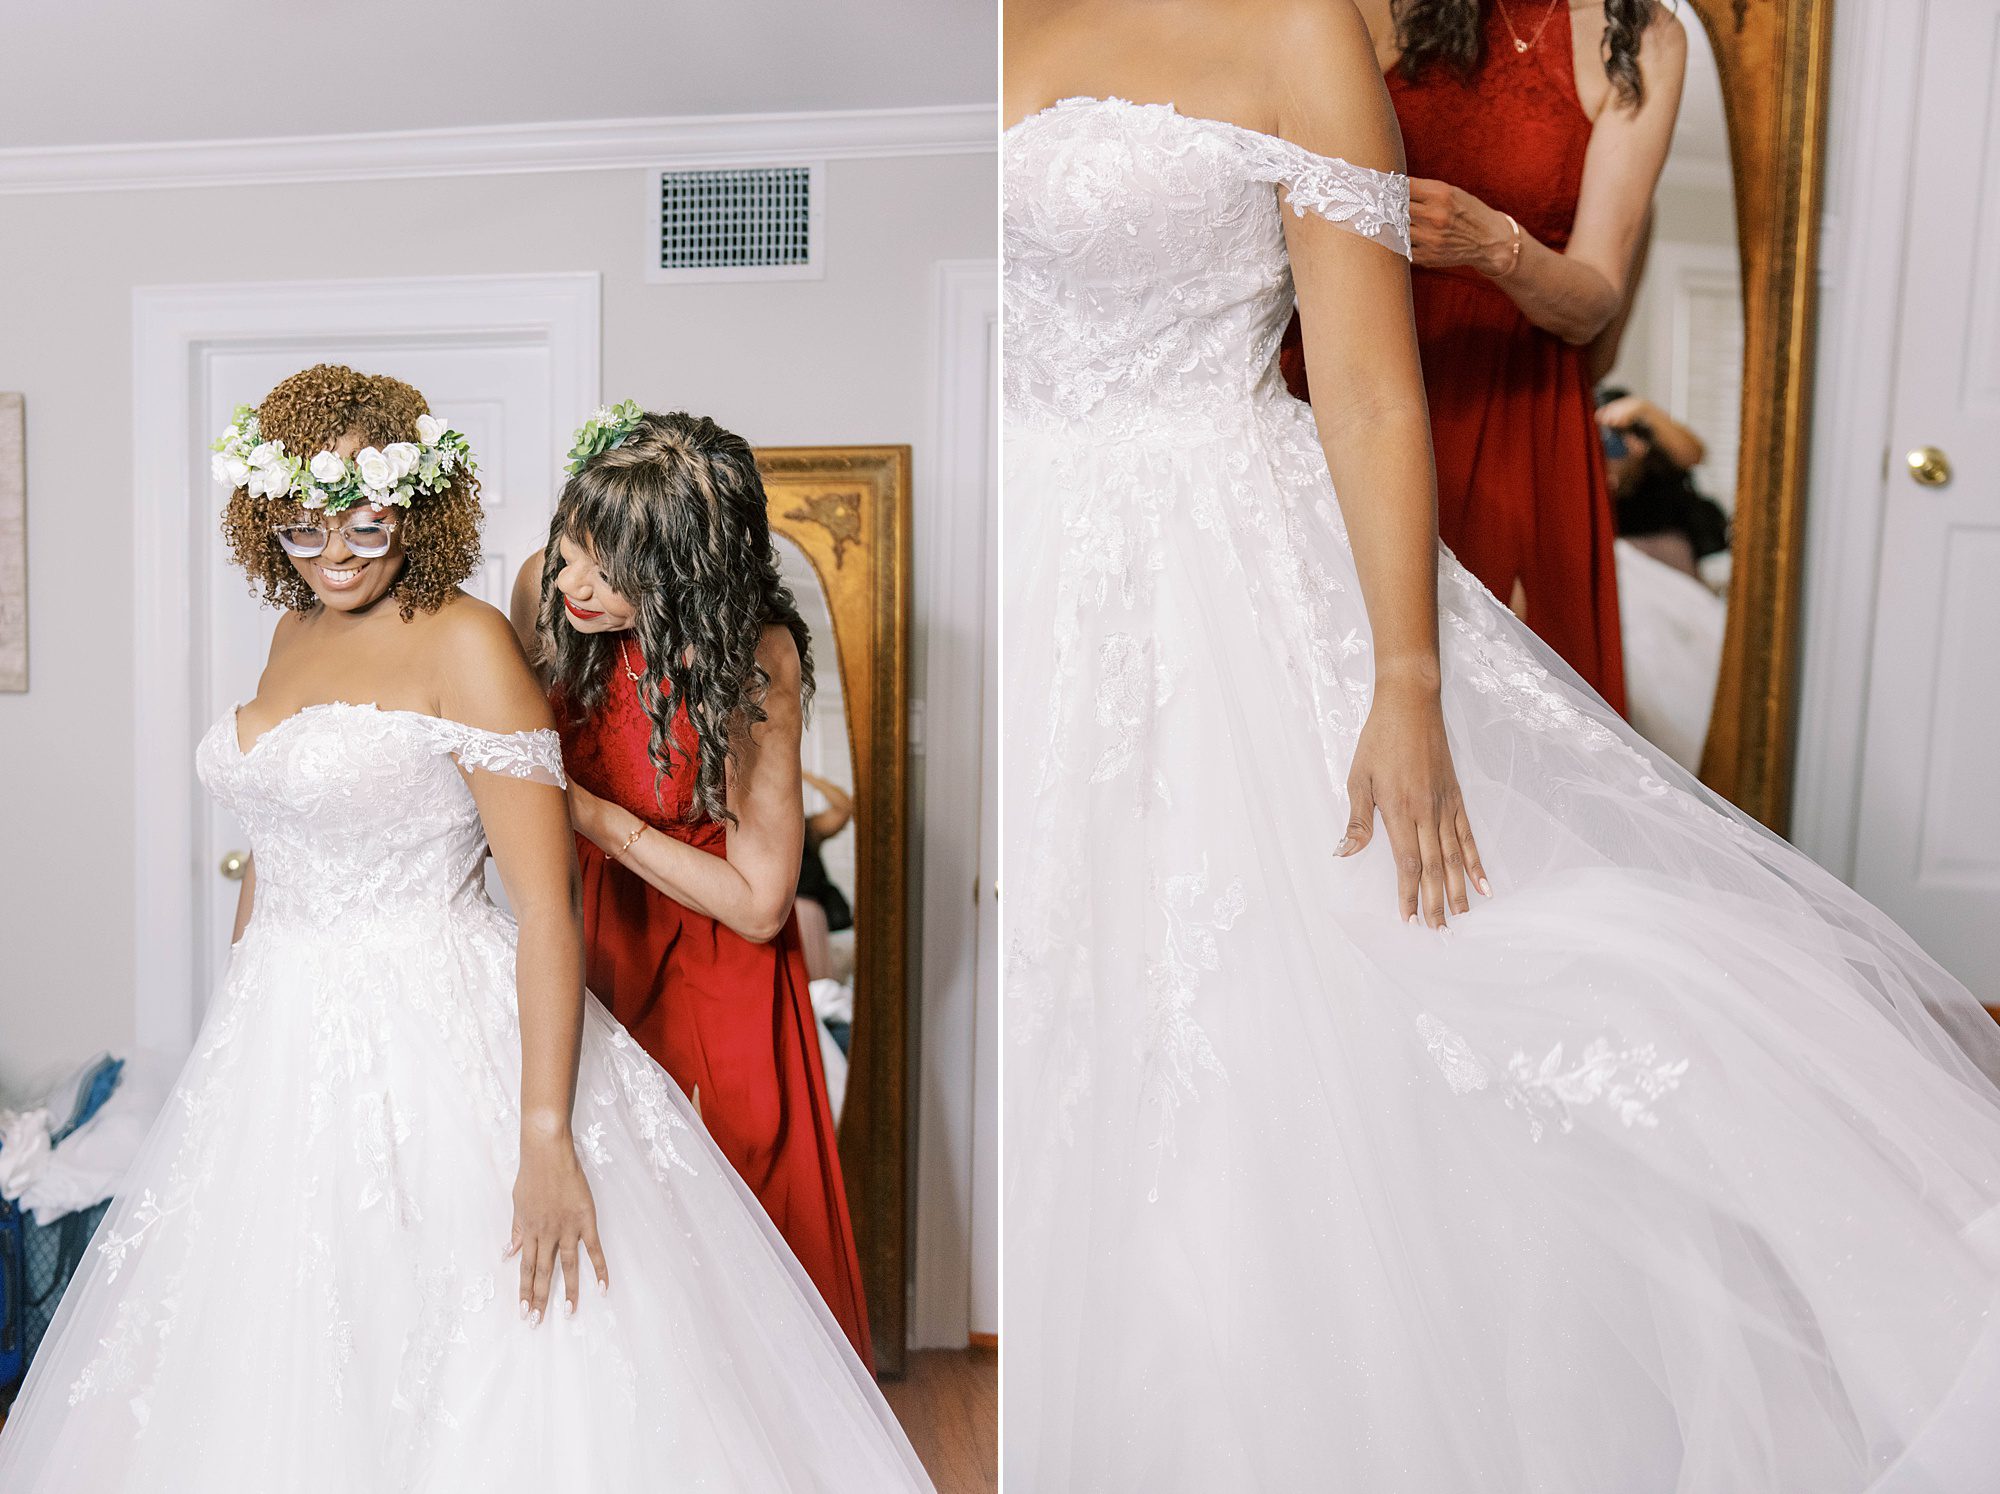 bridesmaid helps bride into wedding gown